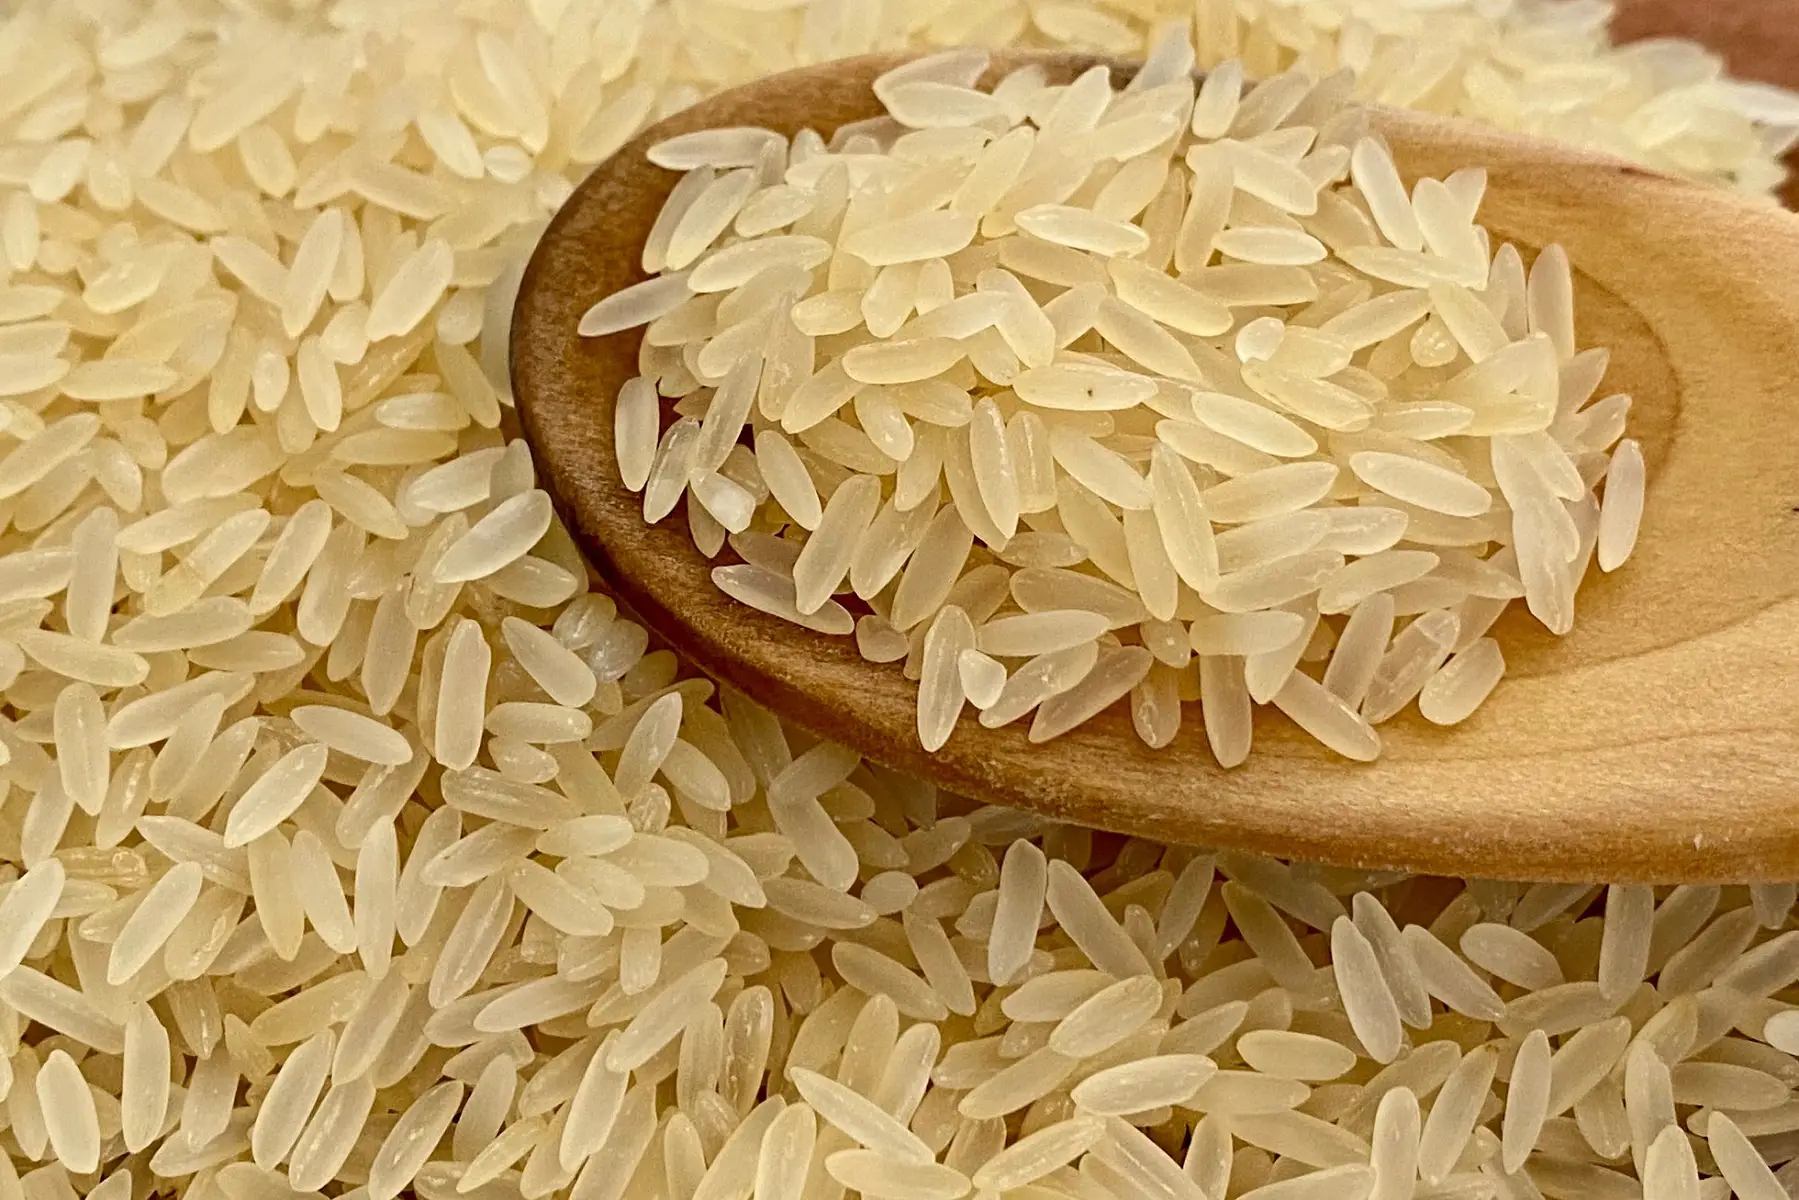 arroz parboilizado cru